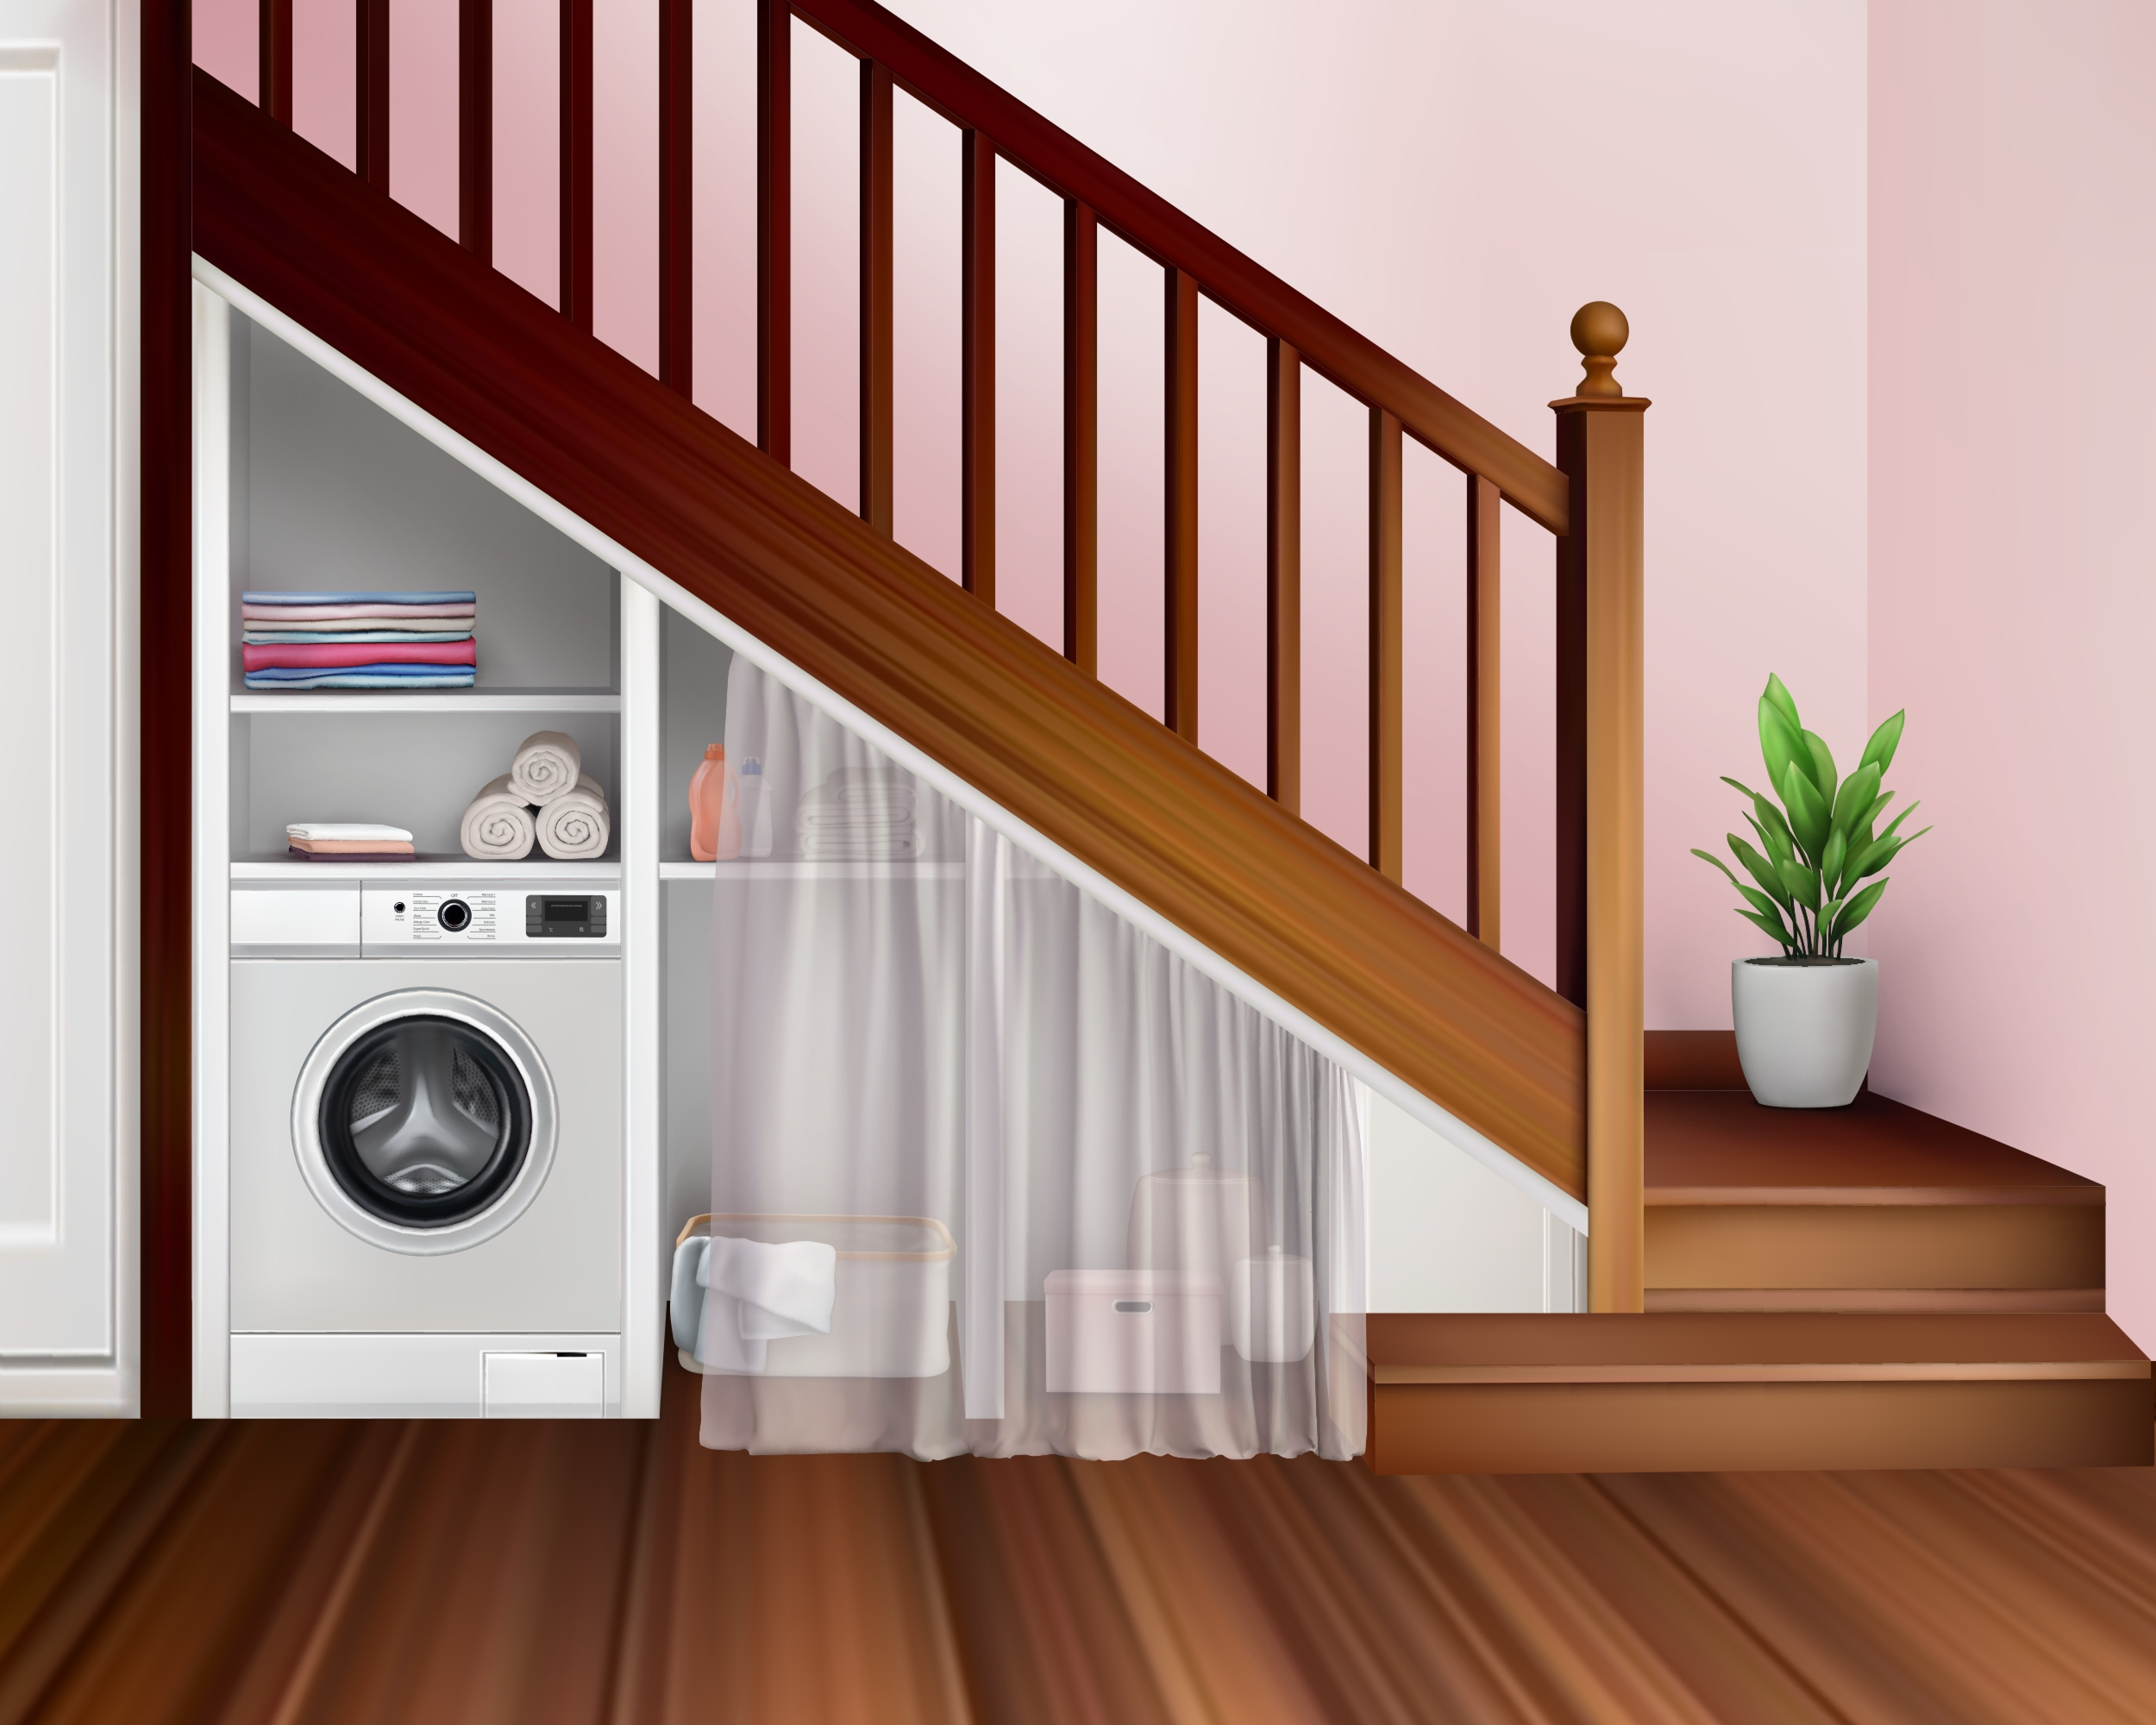 Phòng giặt được bố trí dưới gầm cầu thang cùng với cửa trượt để tăng tính thẩm mỹ. (Ảnh: Shutterstock)